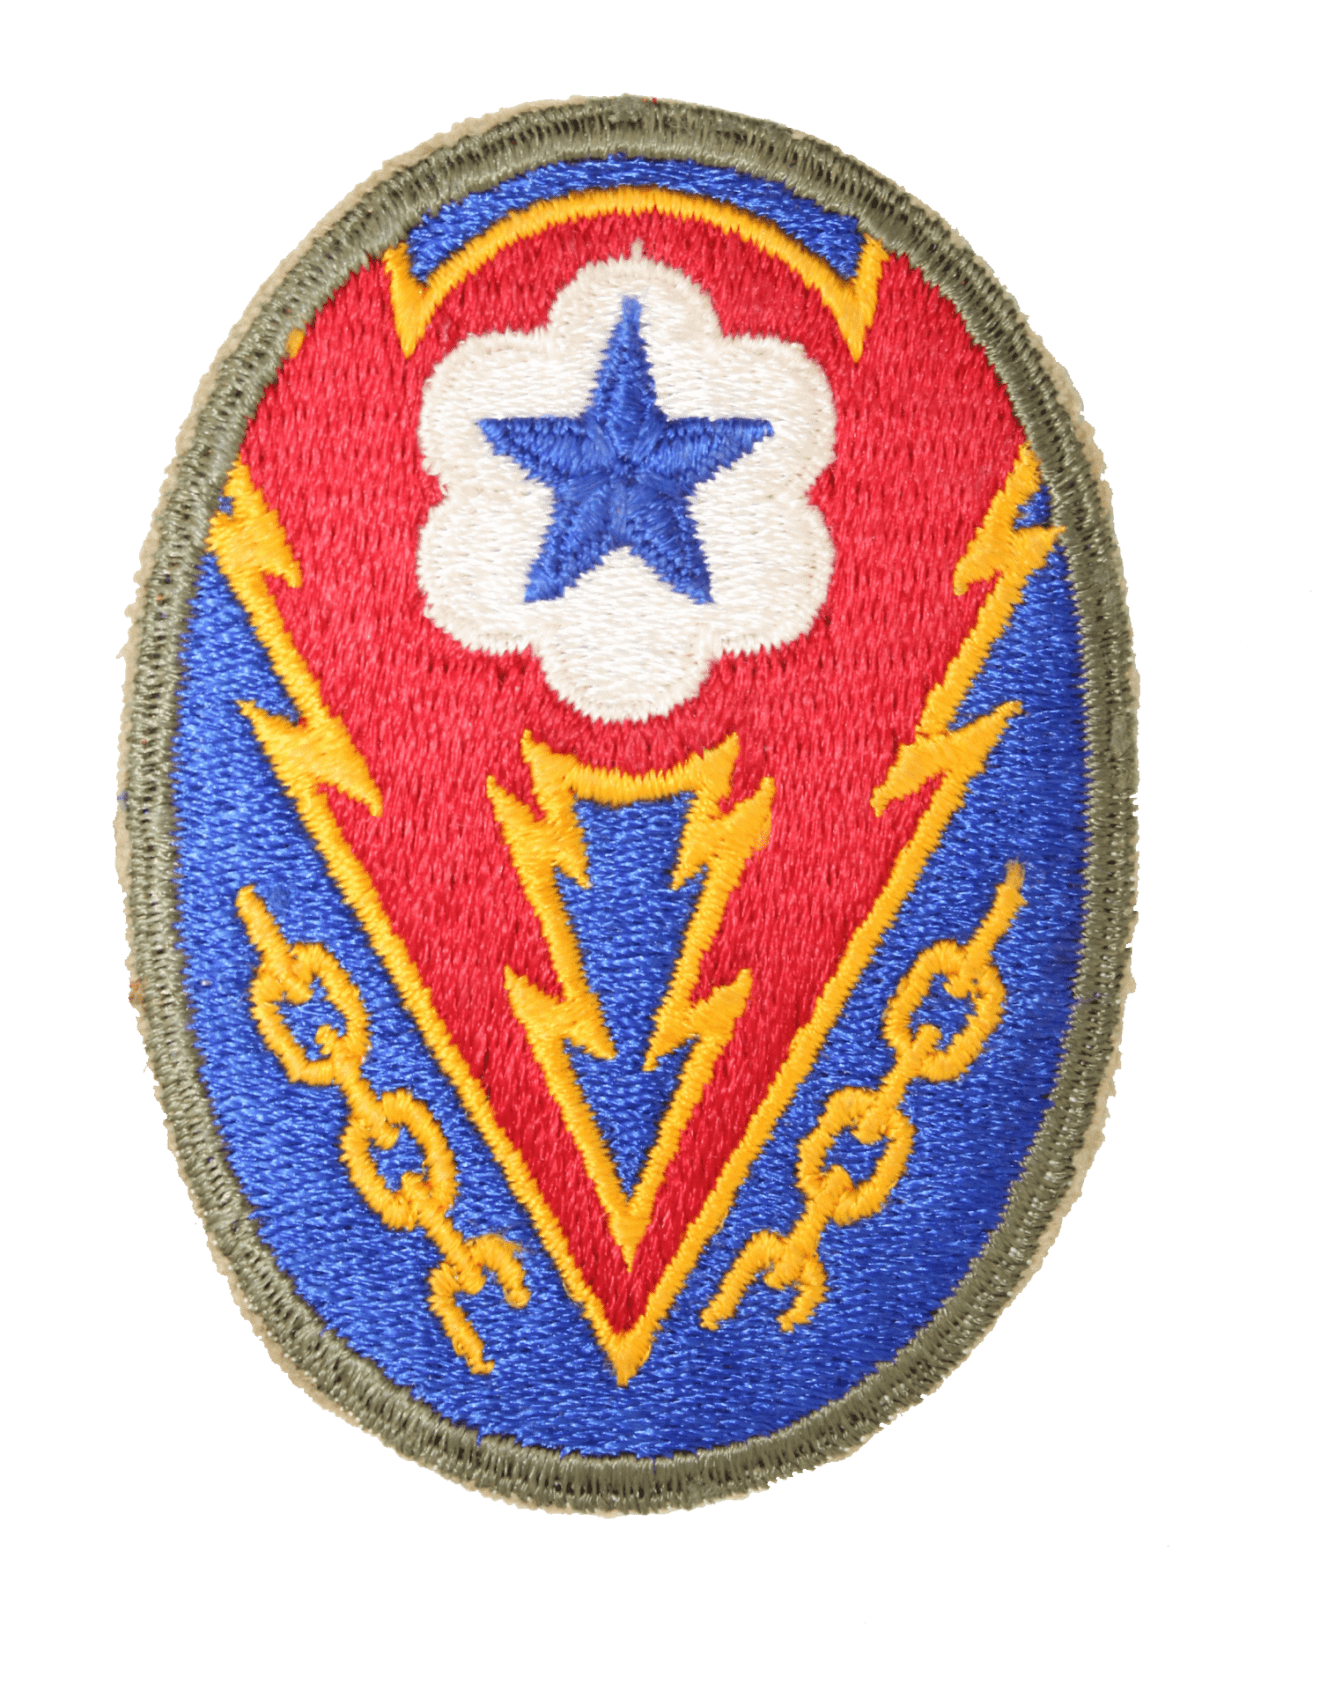 e-t-o-u-s-a-badge-military-classic-memorabilia